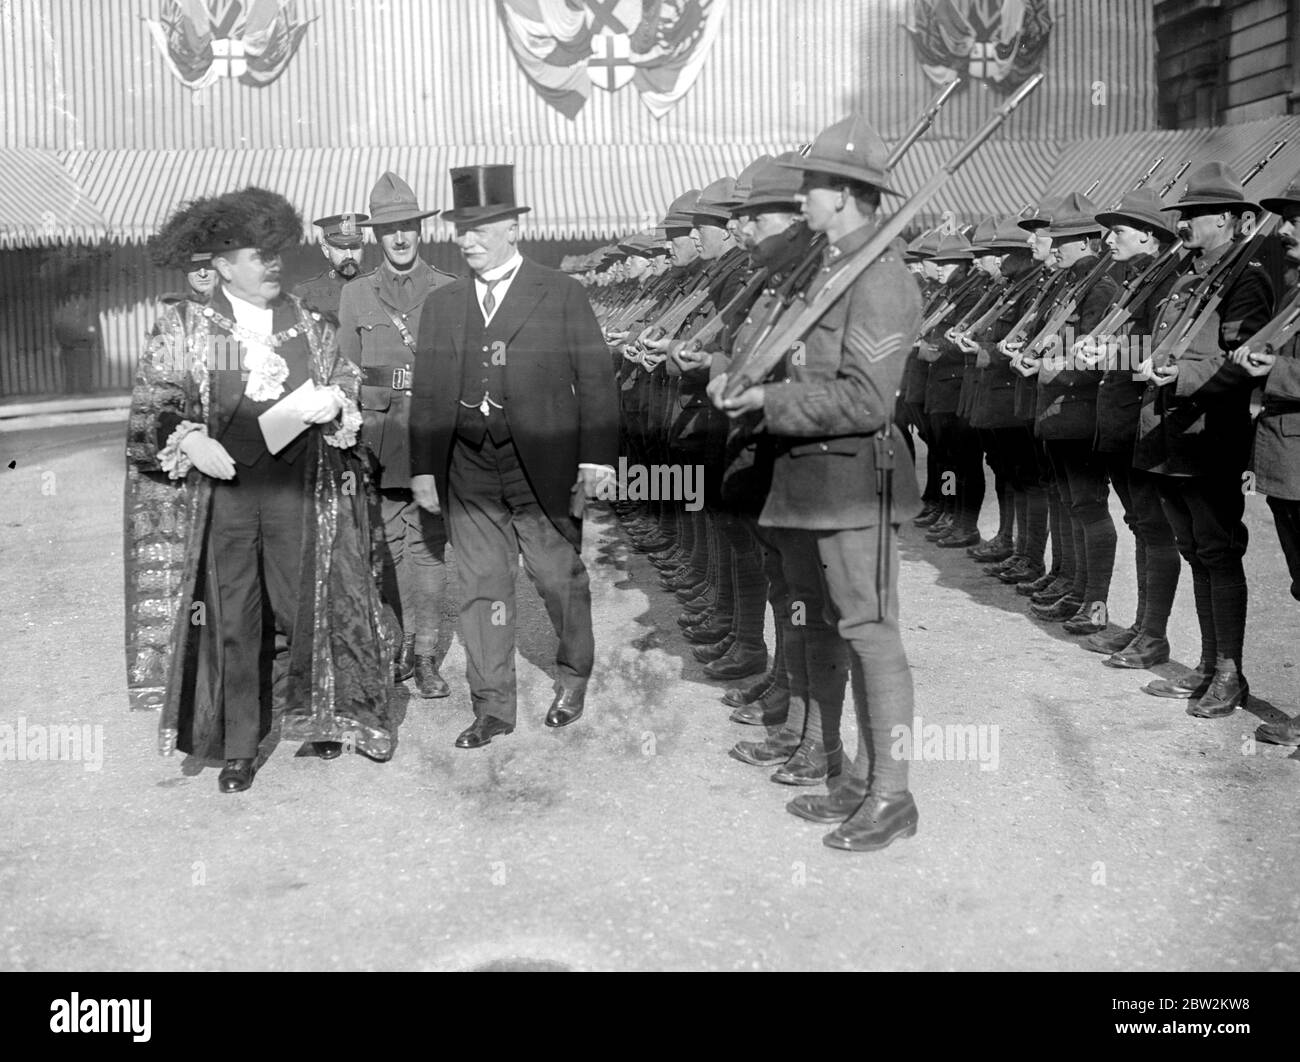 M. Massey, Premier Ministre de la Nouvelle-Zélande, a présenté la liberté de la ville - inspectant la garde d'honneur des soldats néo-zélandais dans le Guildhall Yard avec Sir Charles Cheere Wakefield. 11 novembre 1916 Banque D'Images